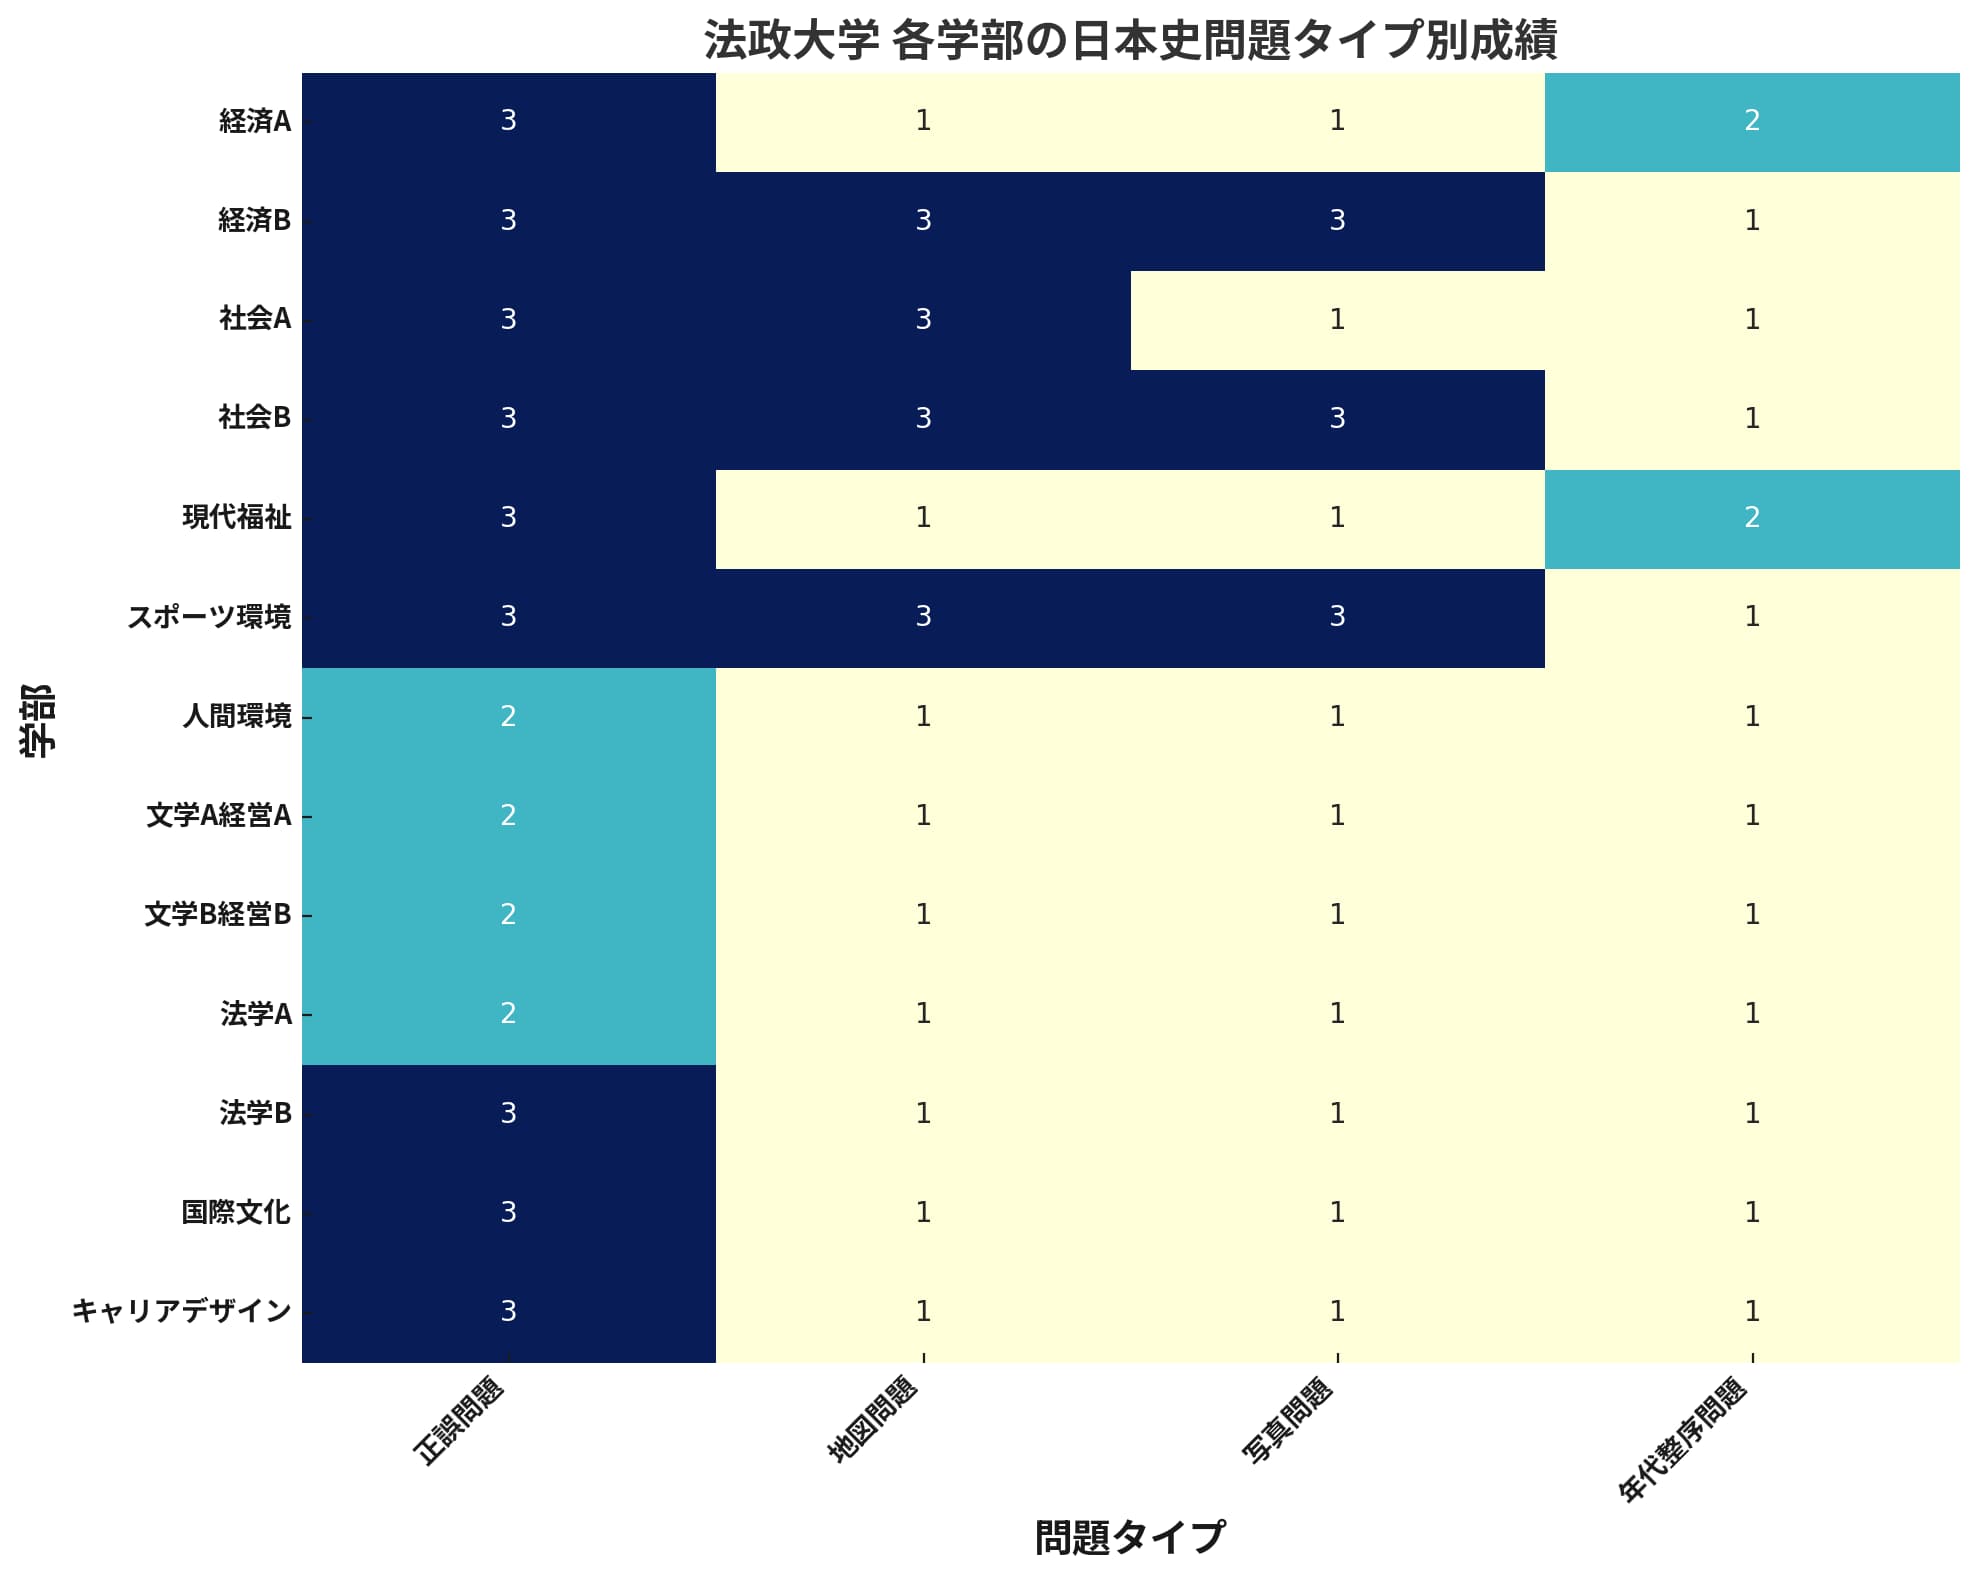 法政大学の各学部における日本史の問題タイプ別の成績を示すヒートマップ